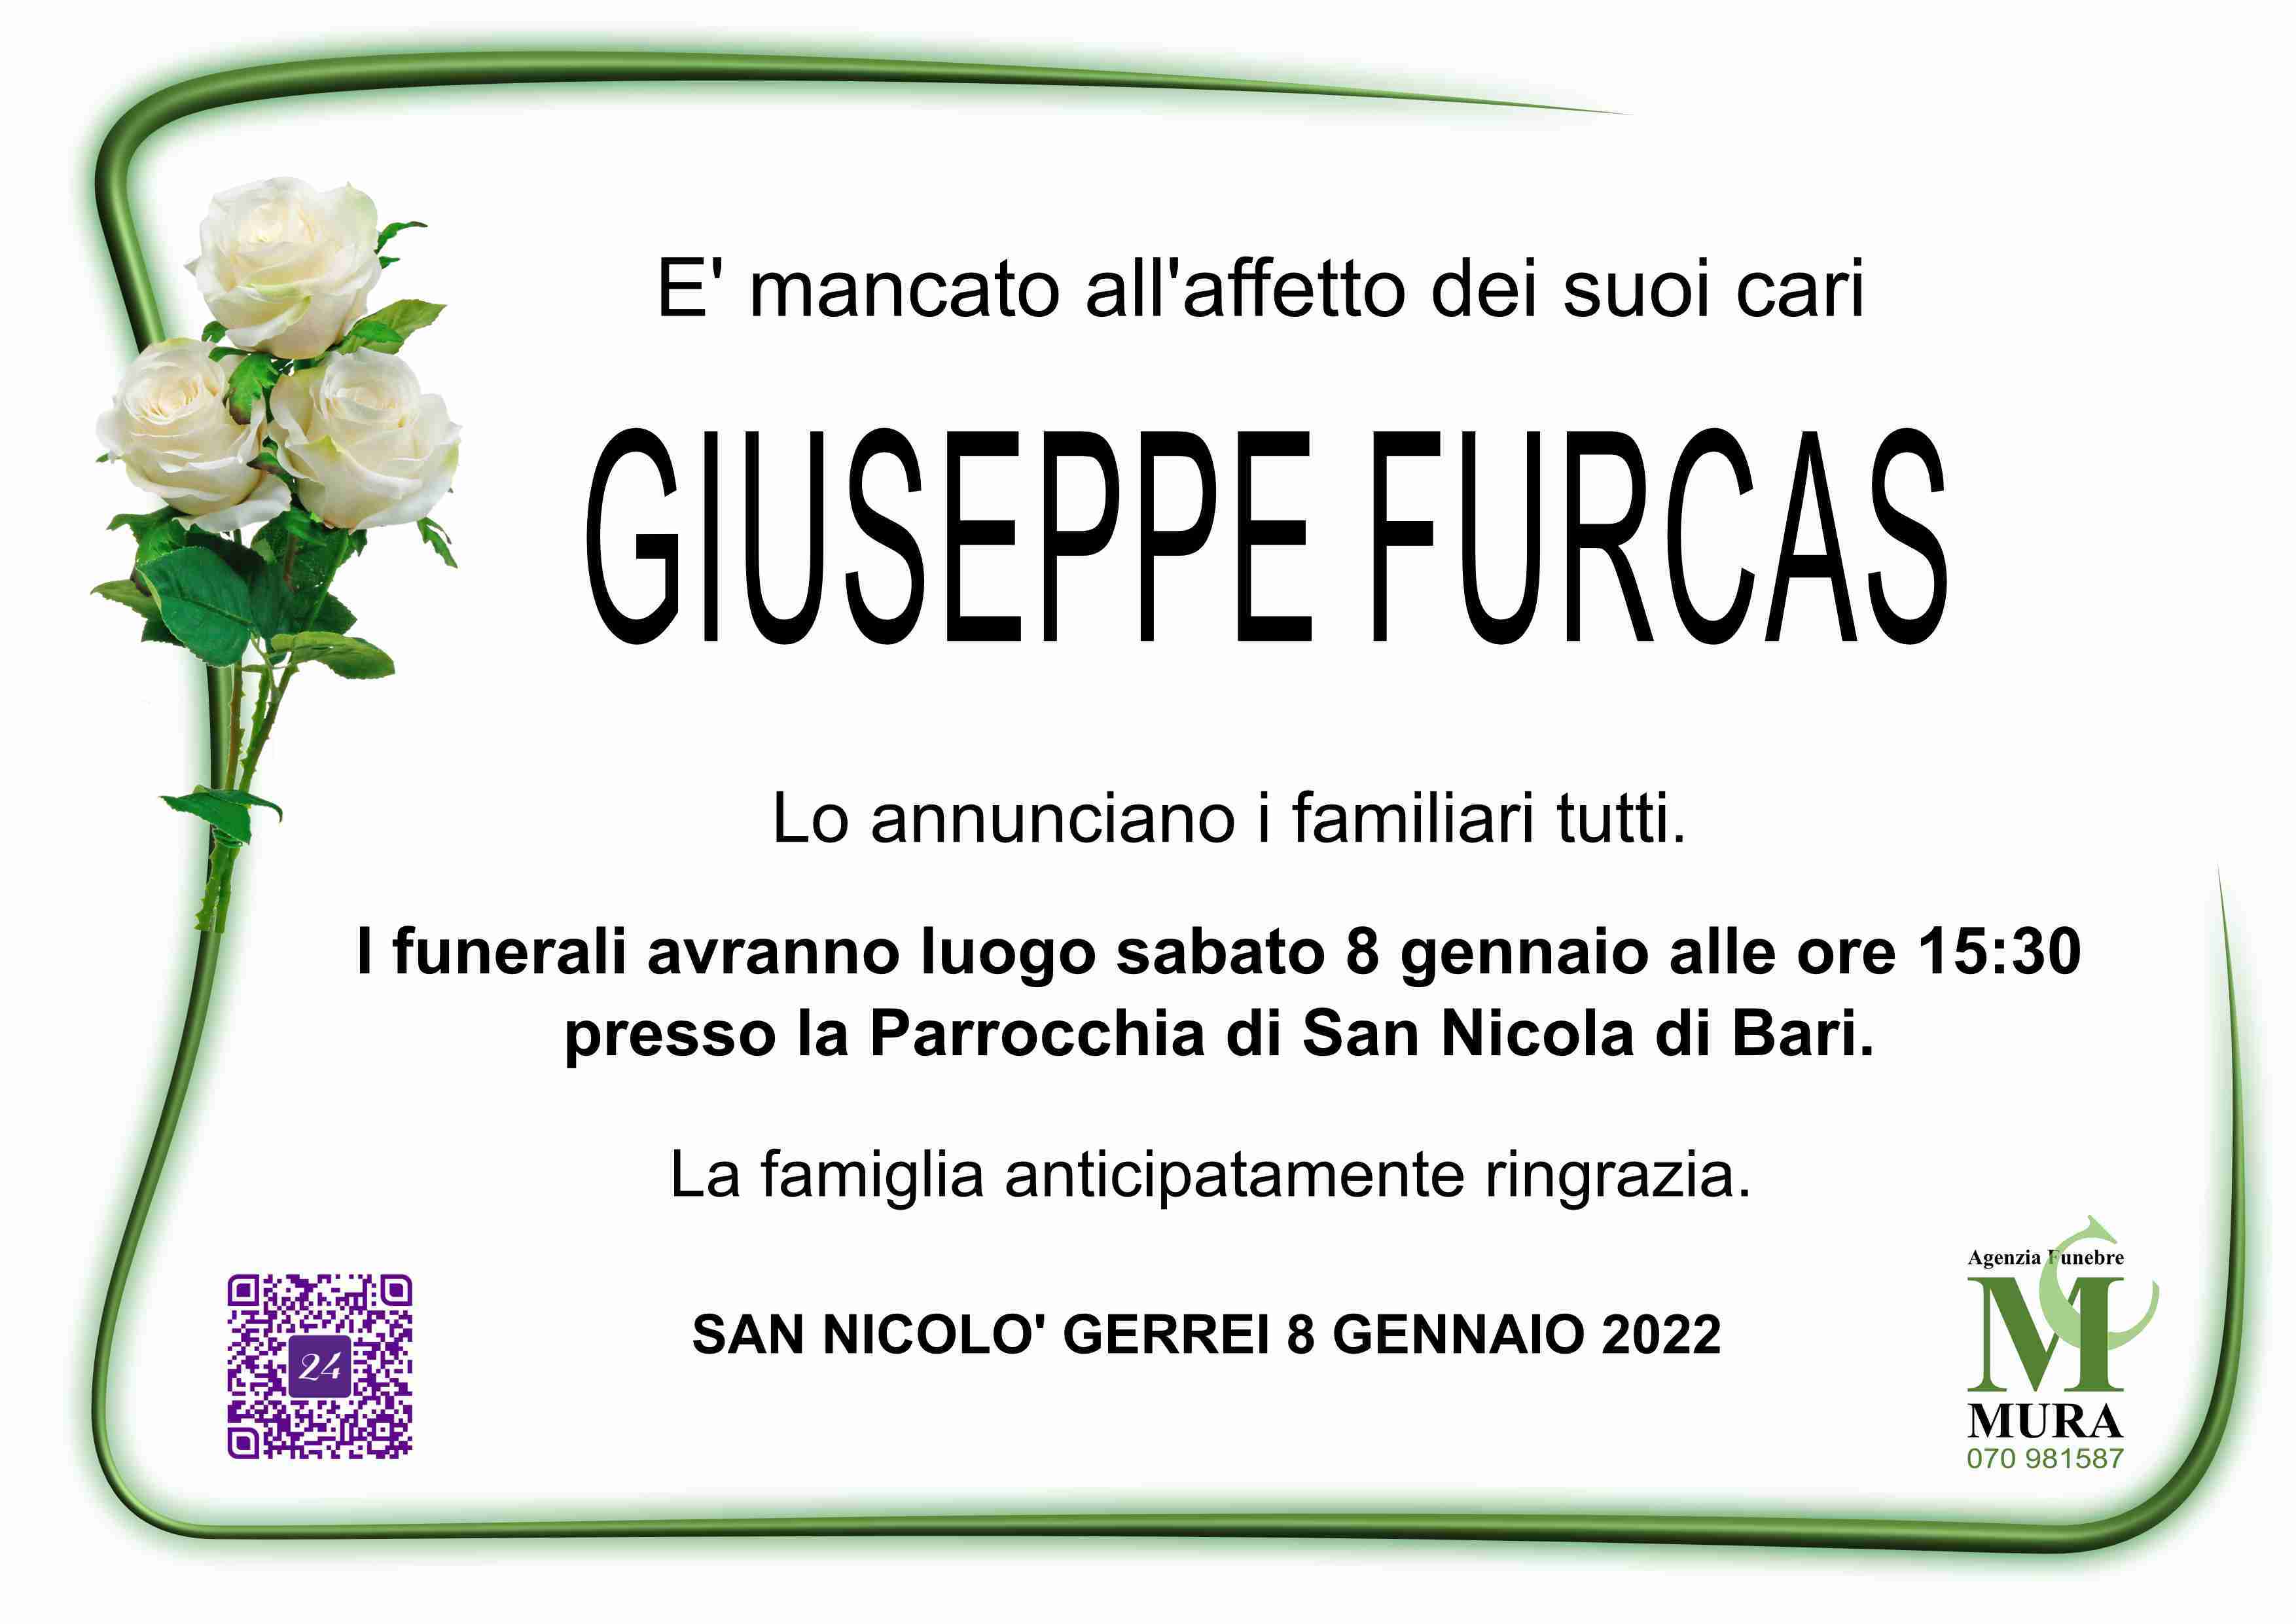 Giuseppe Furcas